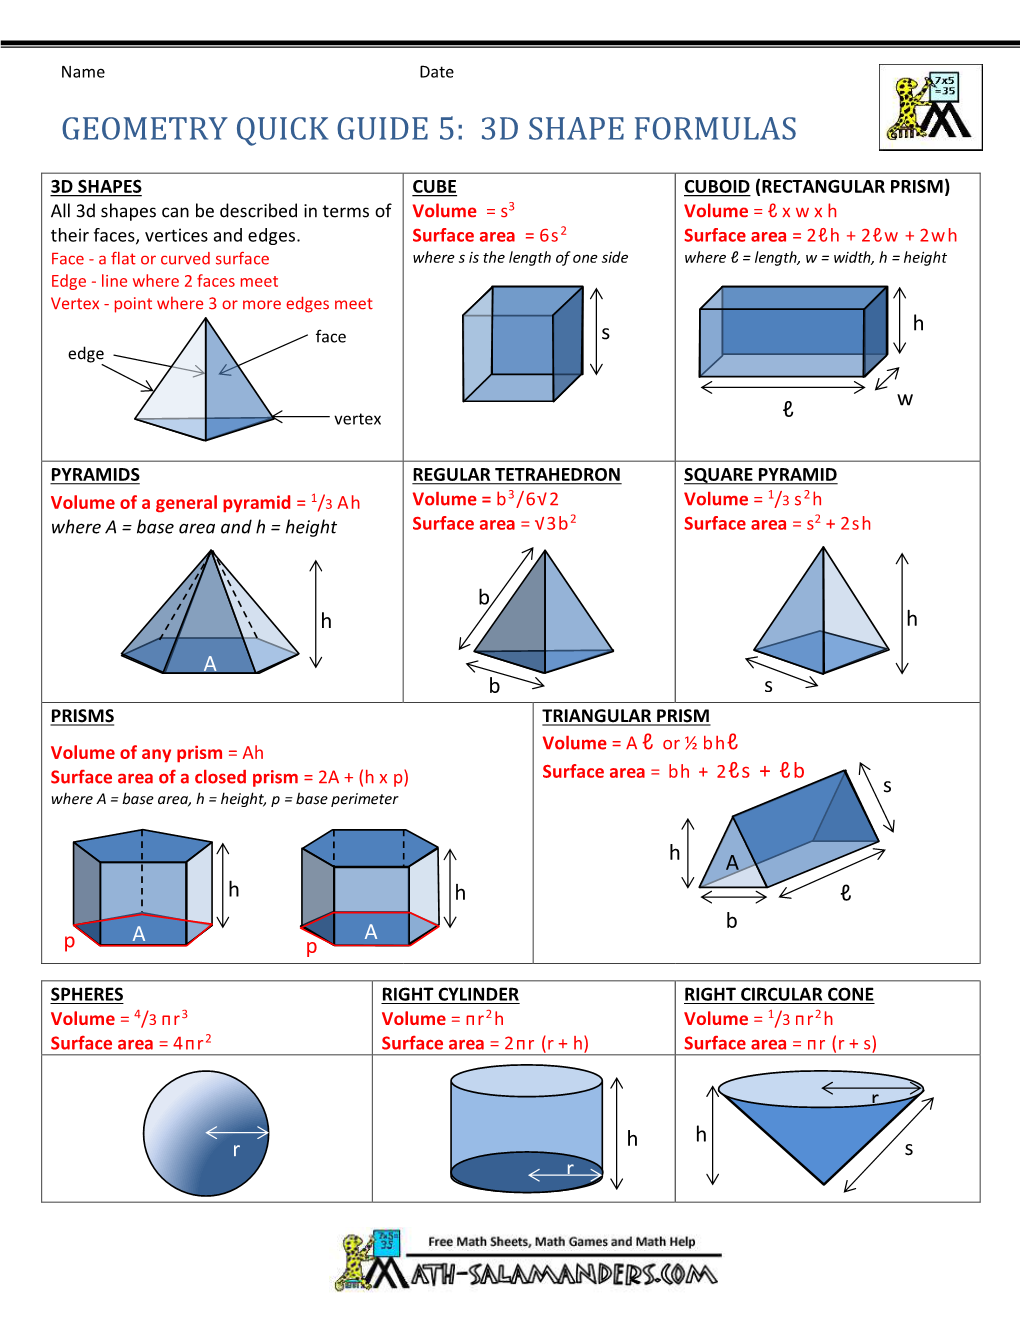 Geometry Quick Guide 5: 3D Shape Formulas